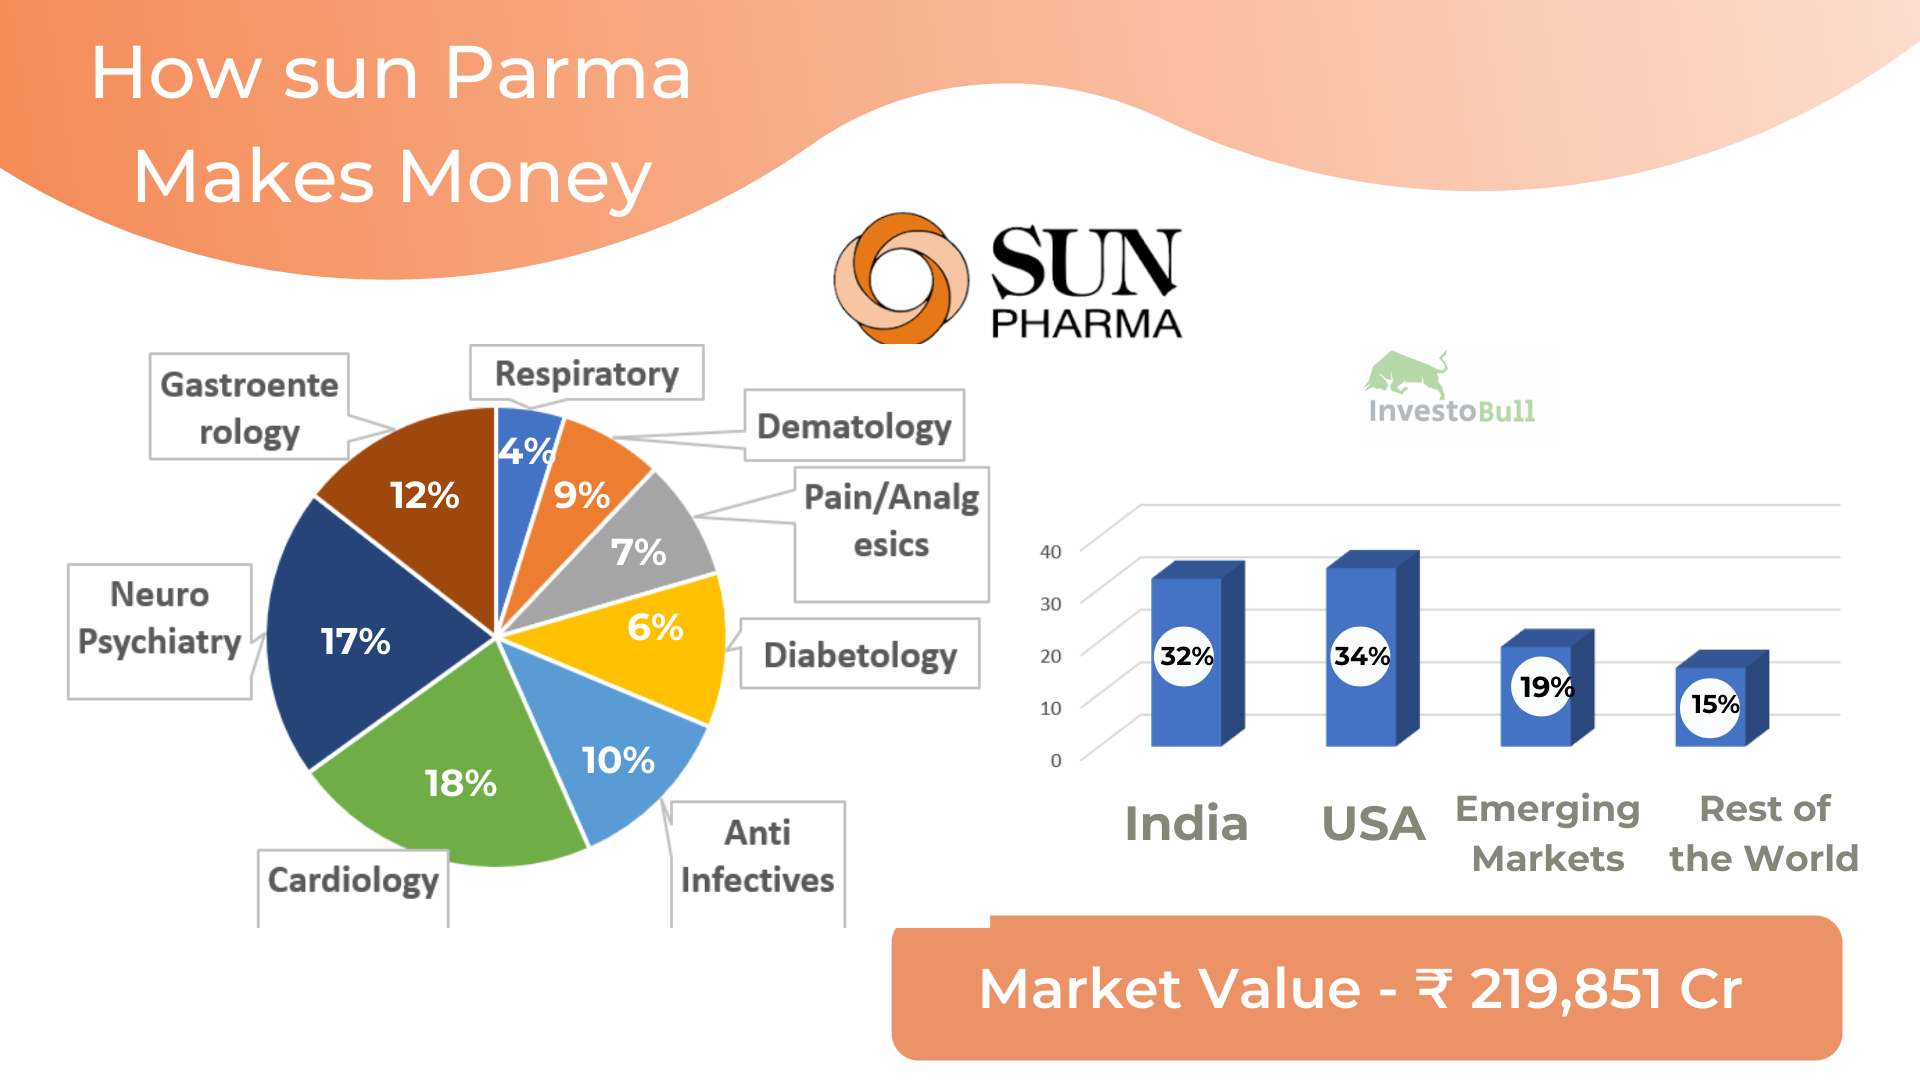 How sun pharma makes money